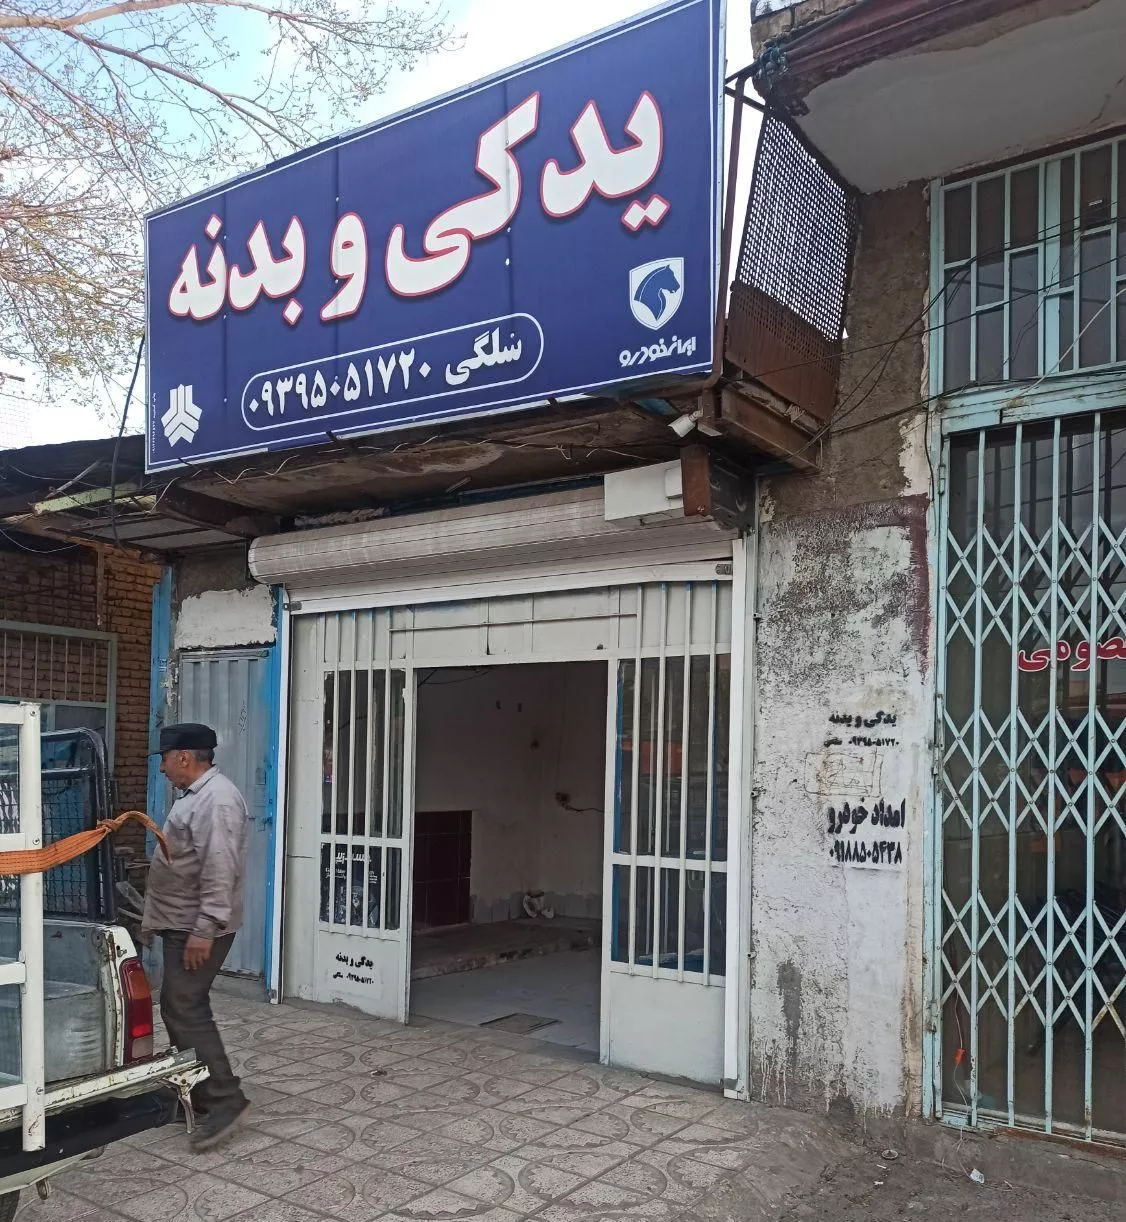 مغازه ورودی نهاوند از رستوران میلاد